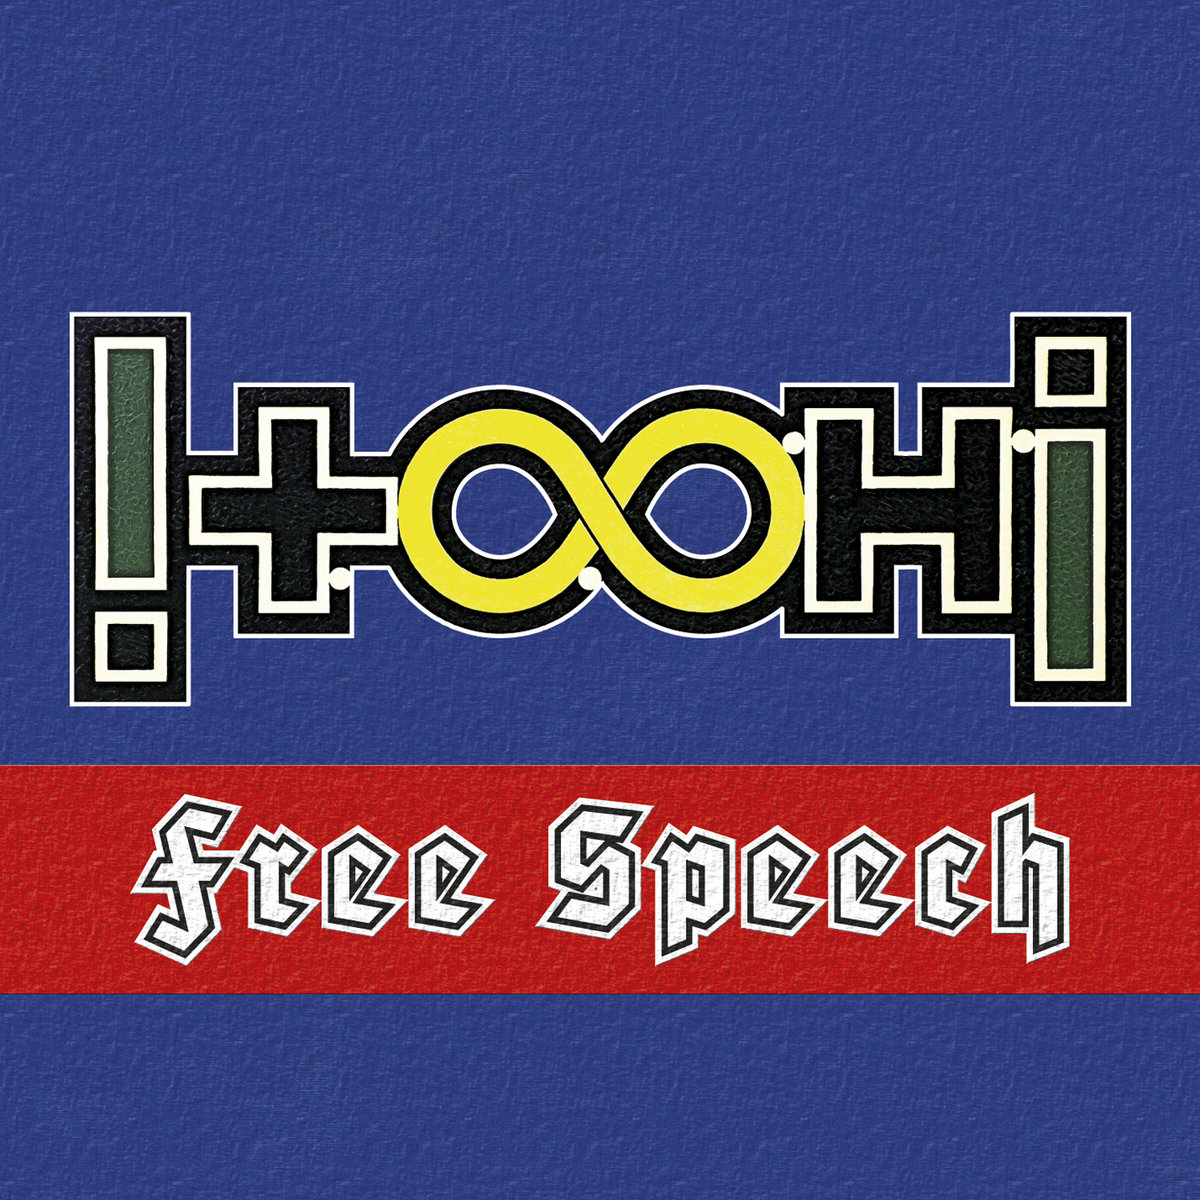 !T.O.O.H.! - Free Speech cover 